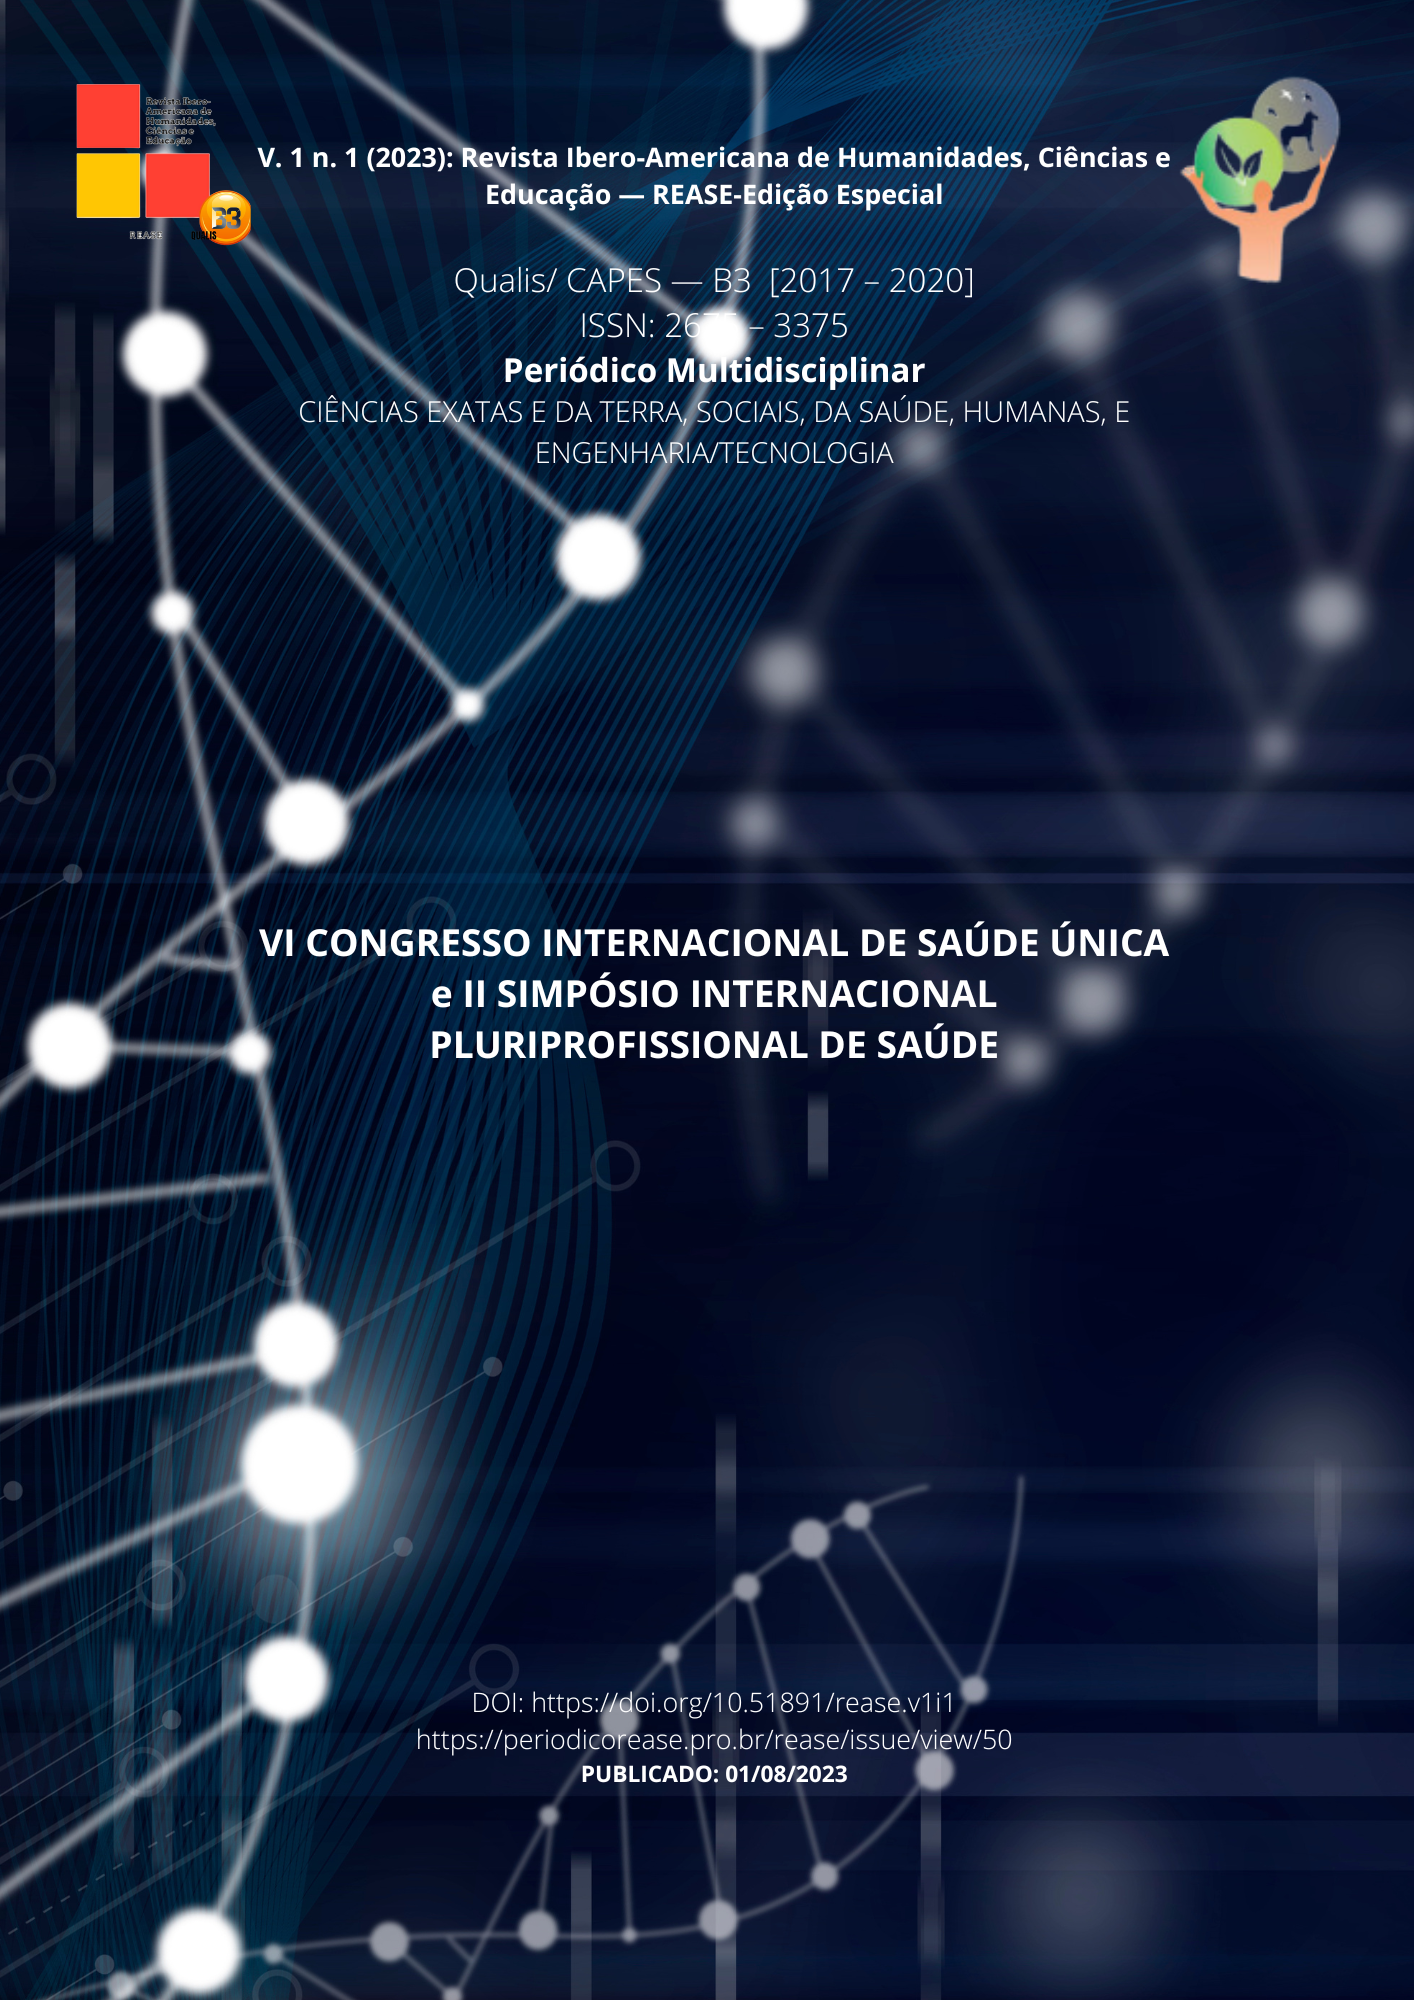 					View Vol. 1 (2023): Revista Ibero-Americana de Humanidades, Ciências e Educação- REASE - Edição Especial
				